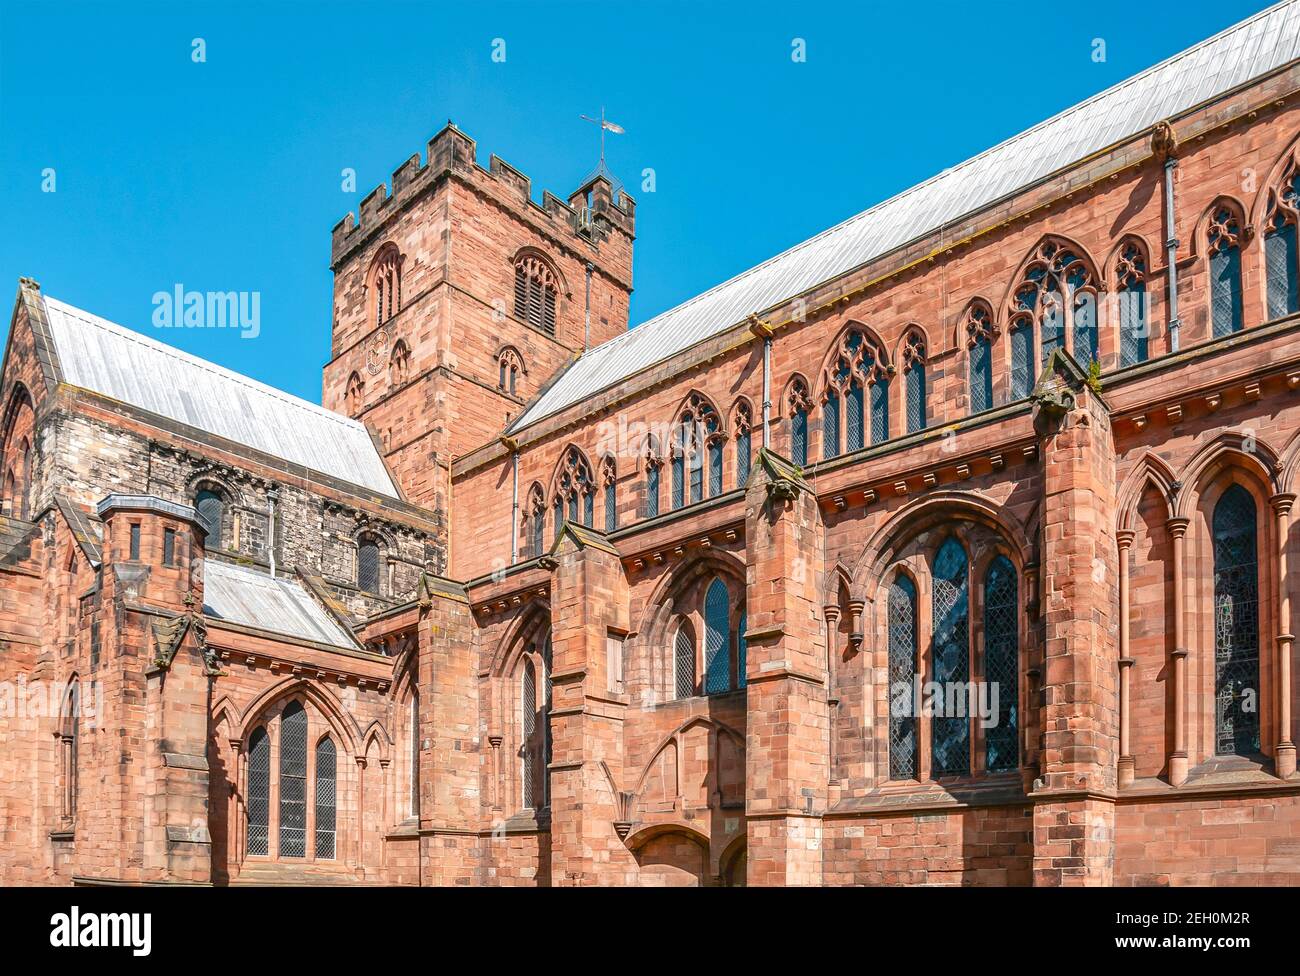 Façade de la cathédrale de Carlisle, Cumbria, Angleterre, Royaume-Uni Banque D'Images